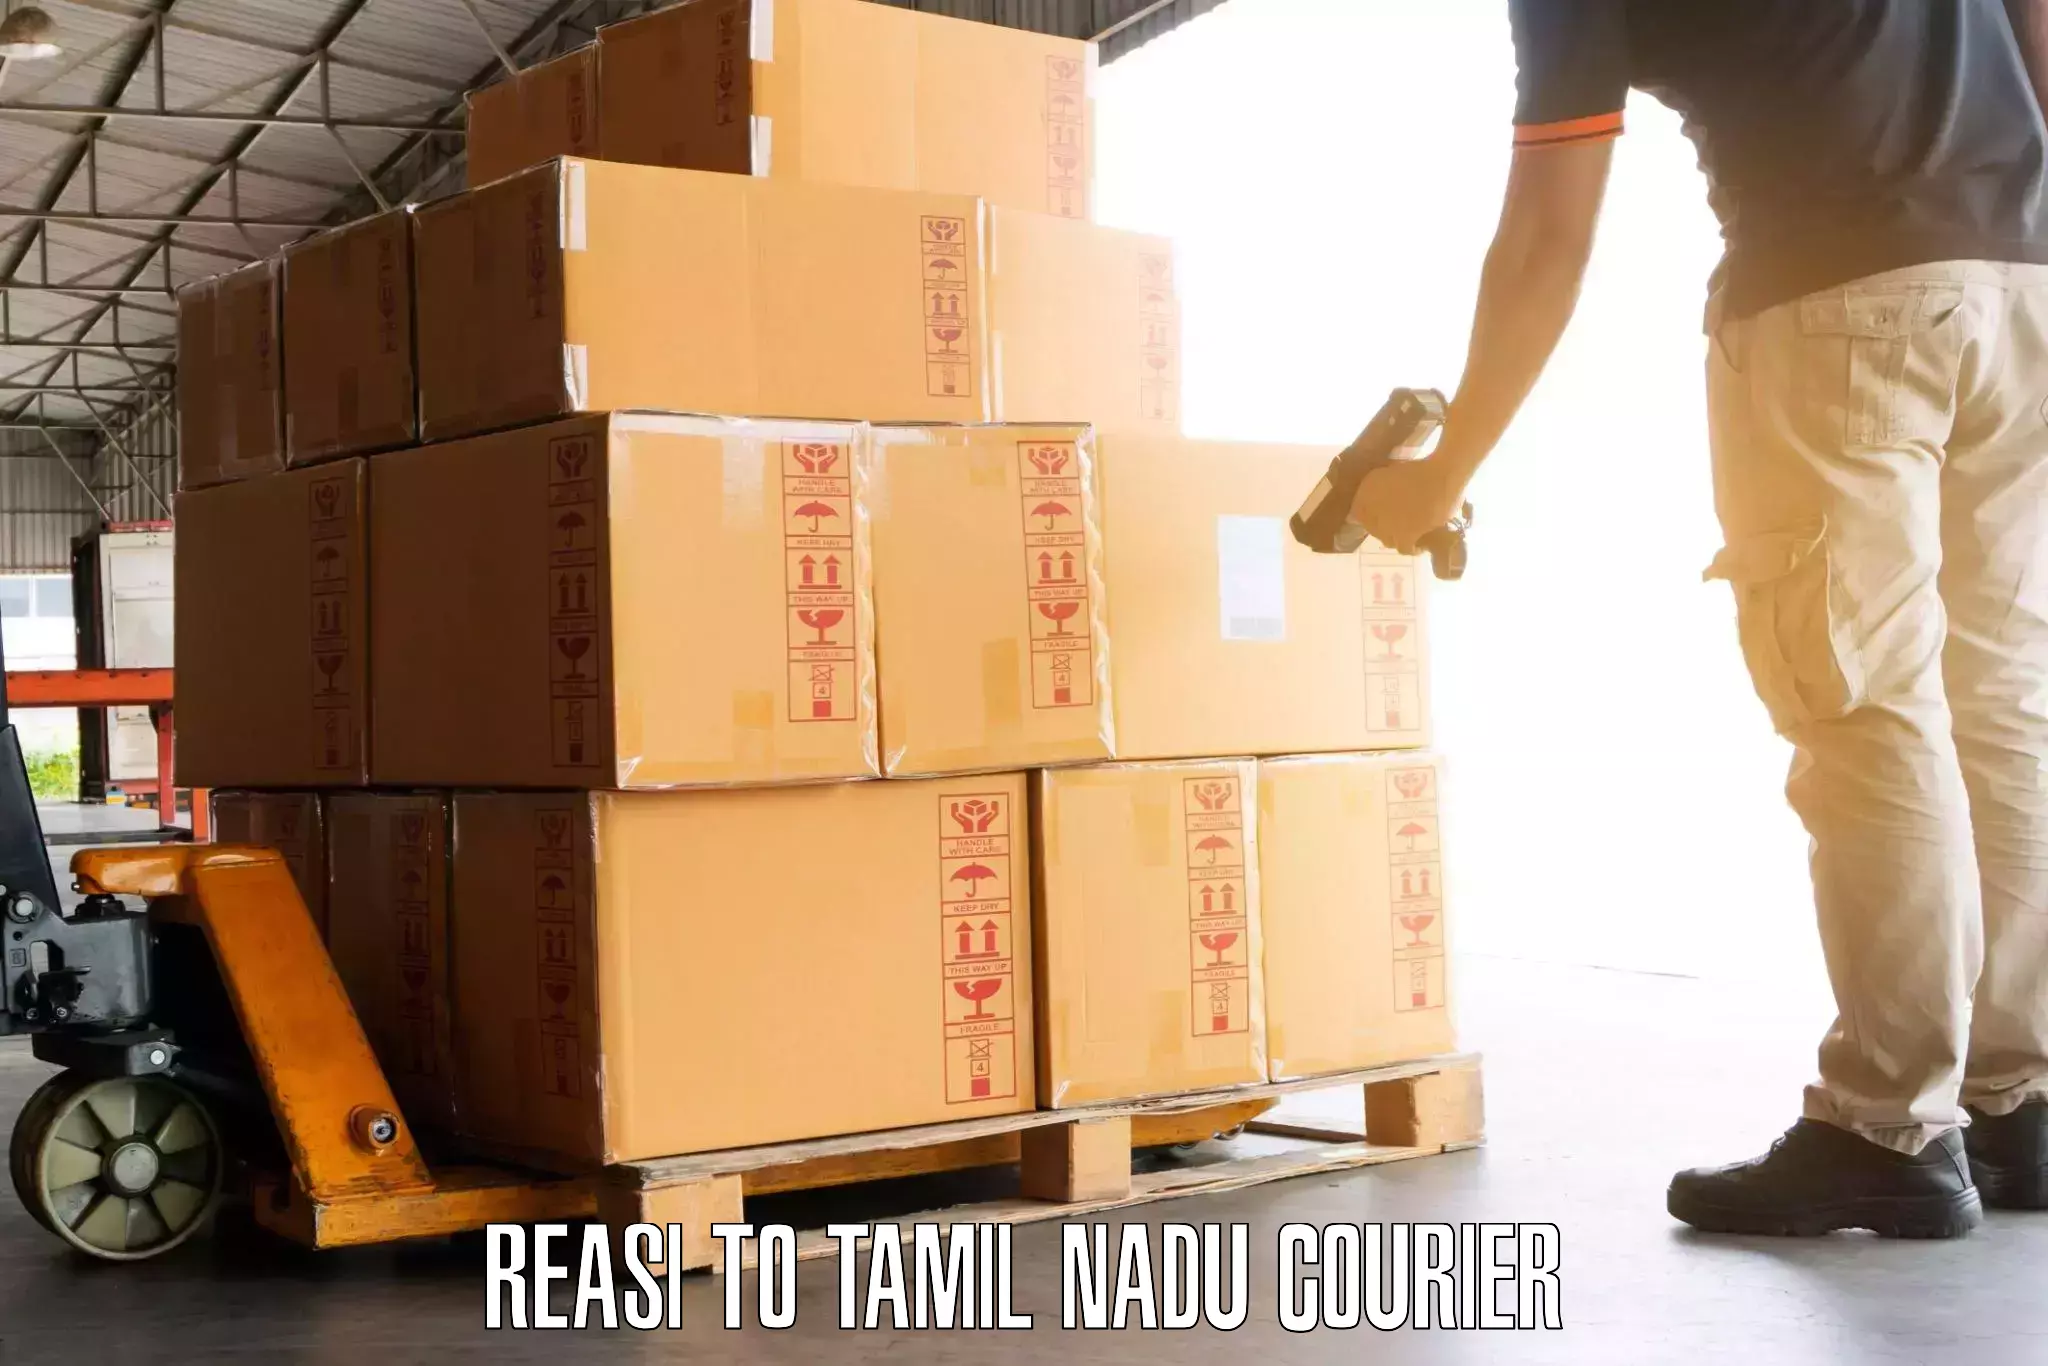 Express luggage delivery Reasi to Tiruturaipundi